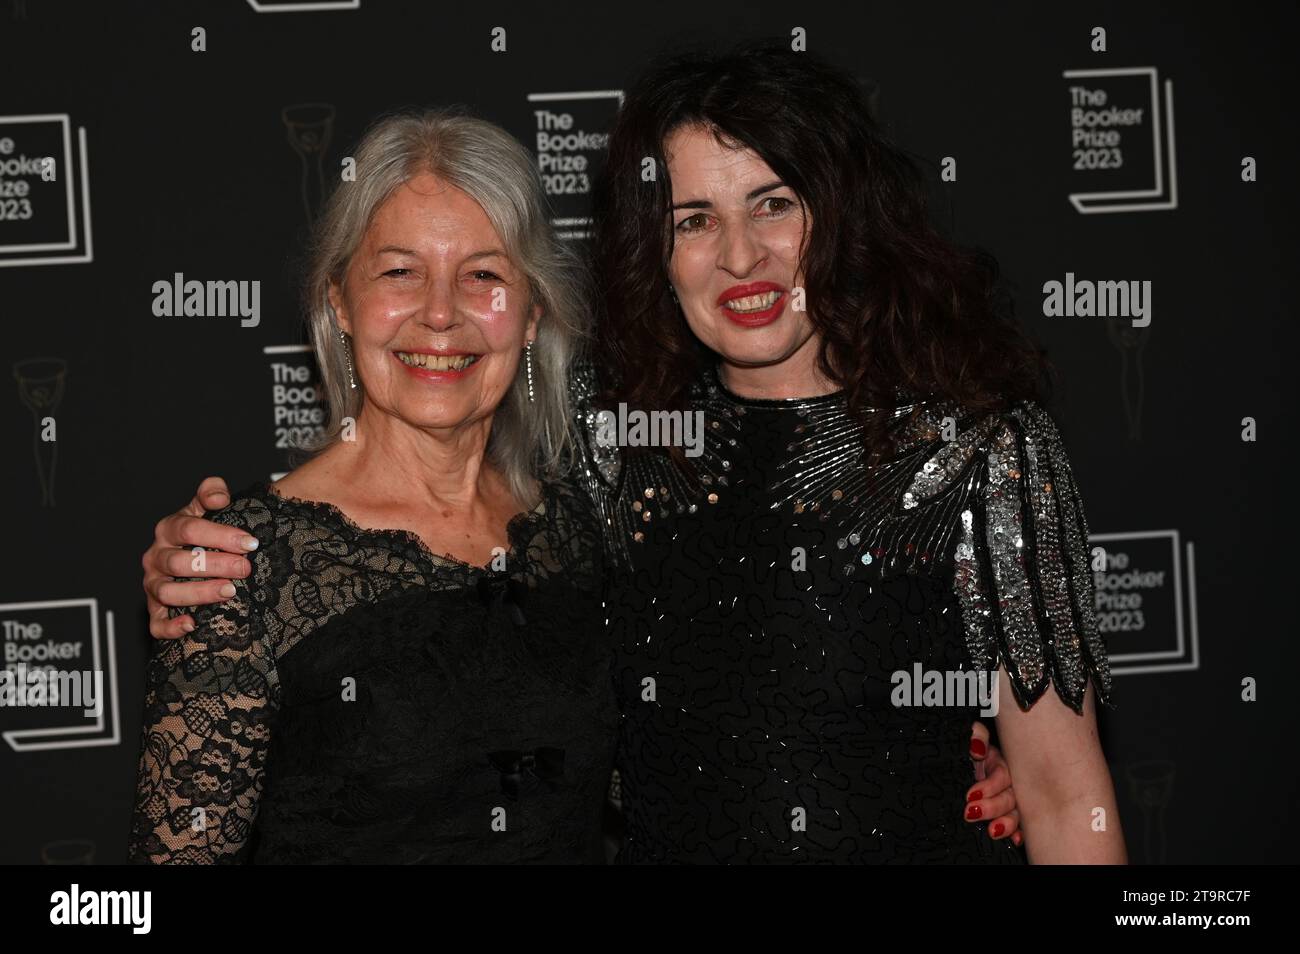 Londra, Regno Unito. 26 novembre 2023. Susan Lynch (R) partecipa alla cerimonia di premiazione del Booker Prize 2023 all'Old Billingsgate, Londra, Regno Unito. Credito: Vedere li/Picture Capital/Alamy Live News Foto Stock